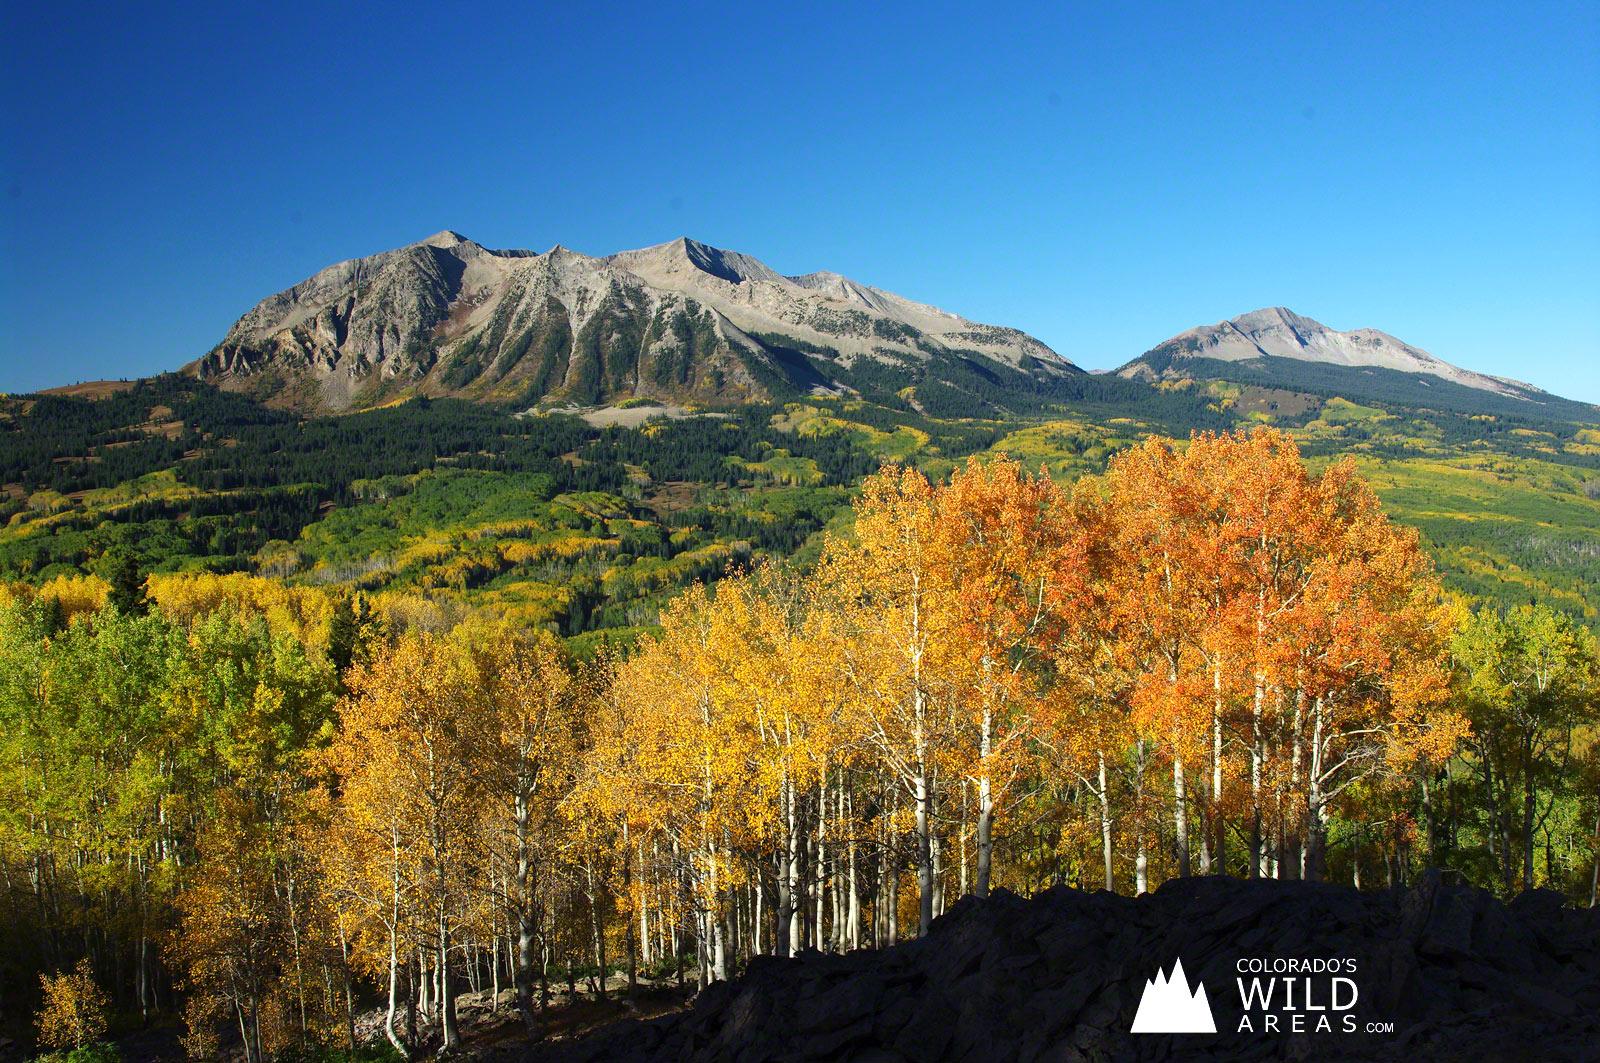 Colorado's Fall Colors Free Wallpaper. Colorado's Wild Areas